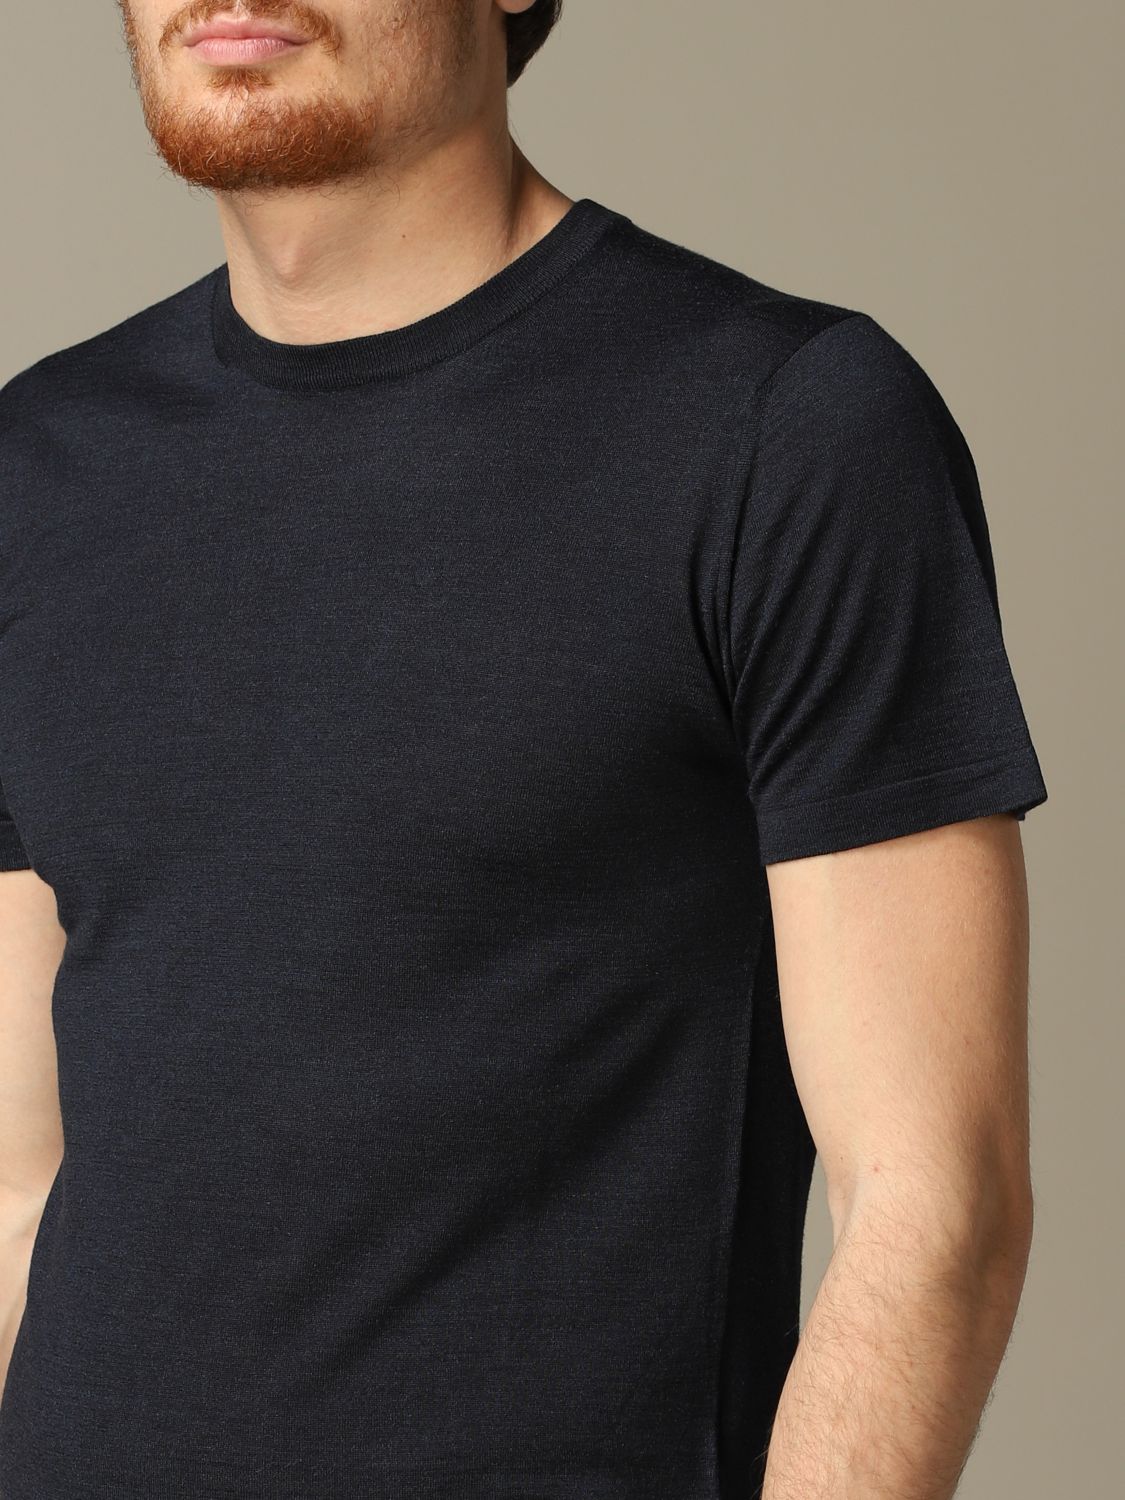 Cruciani Outlet: T-shirt men | T-Shirt Cruciani Men Blue | T-Shirt ...